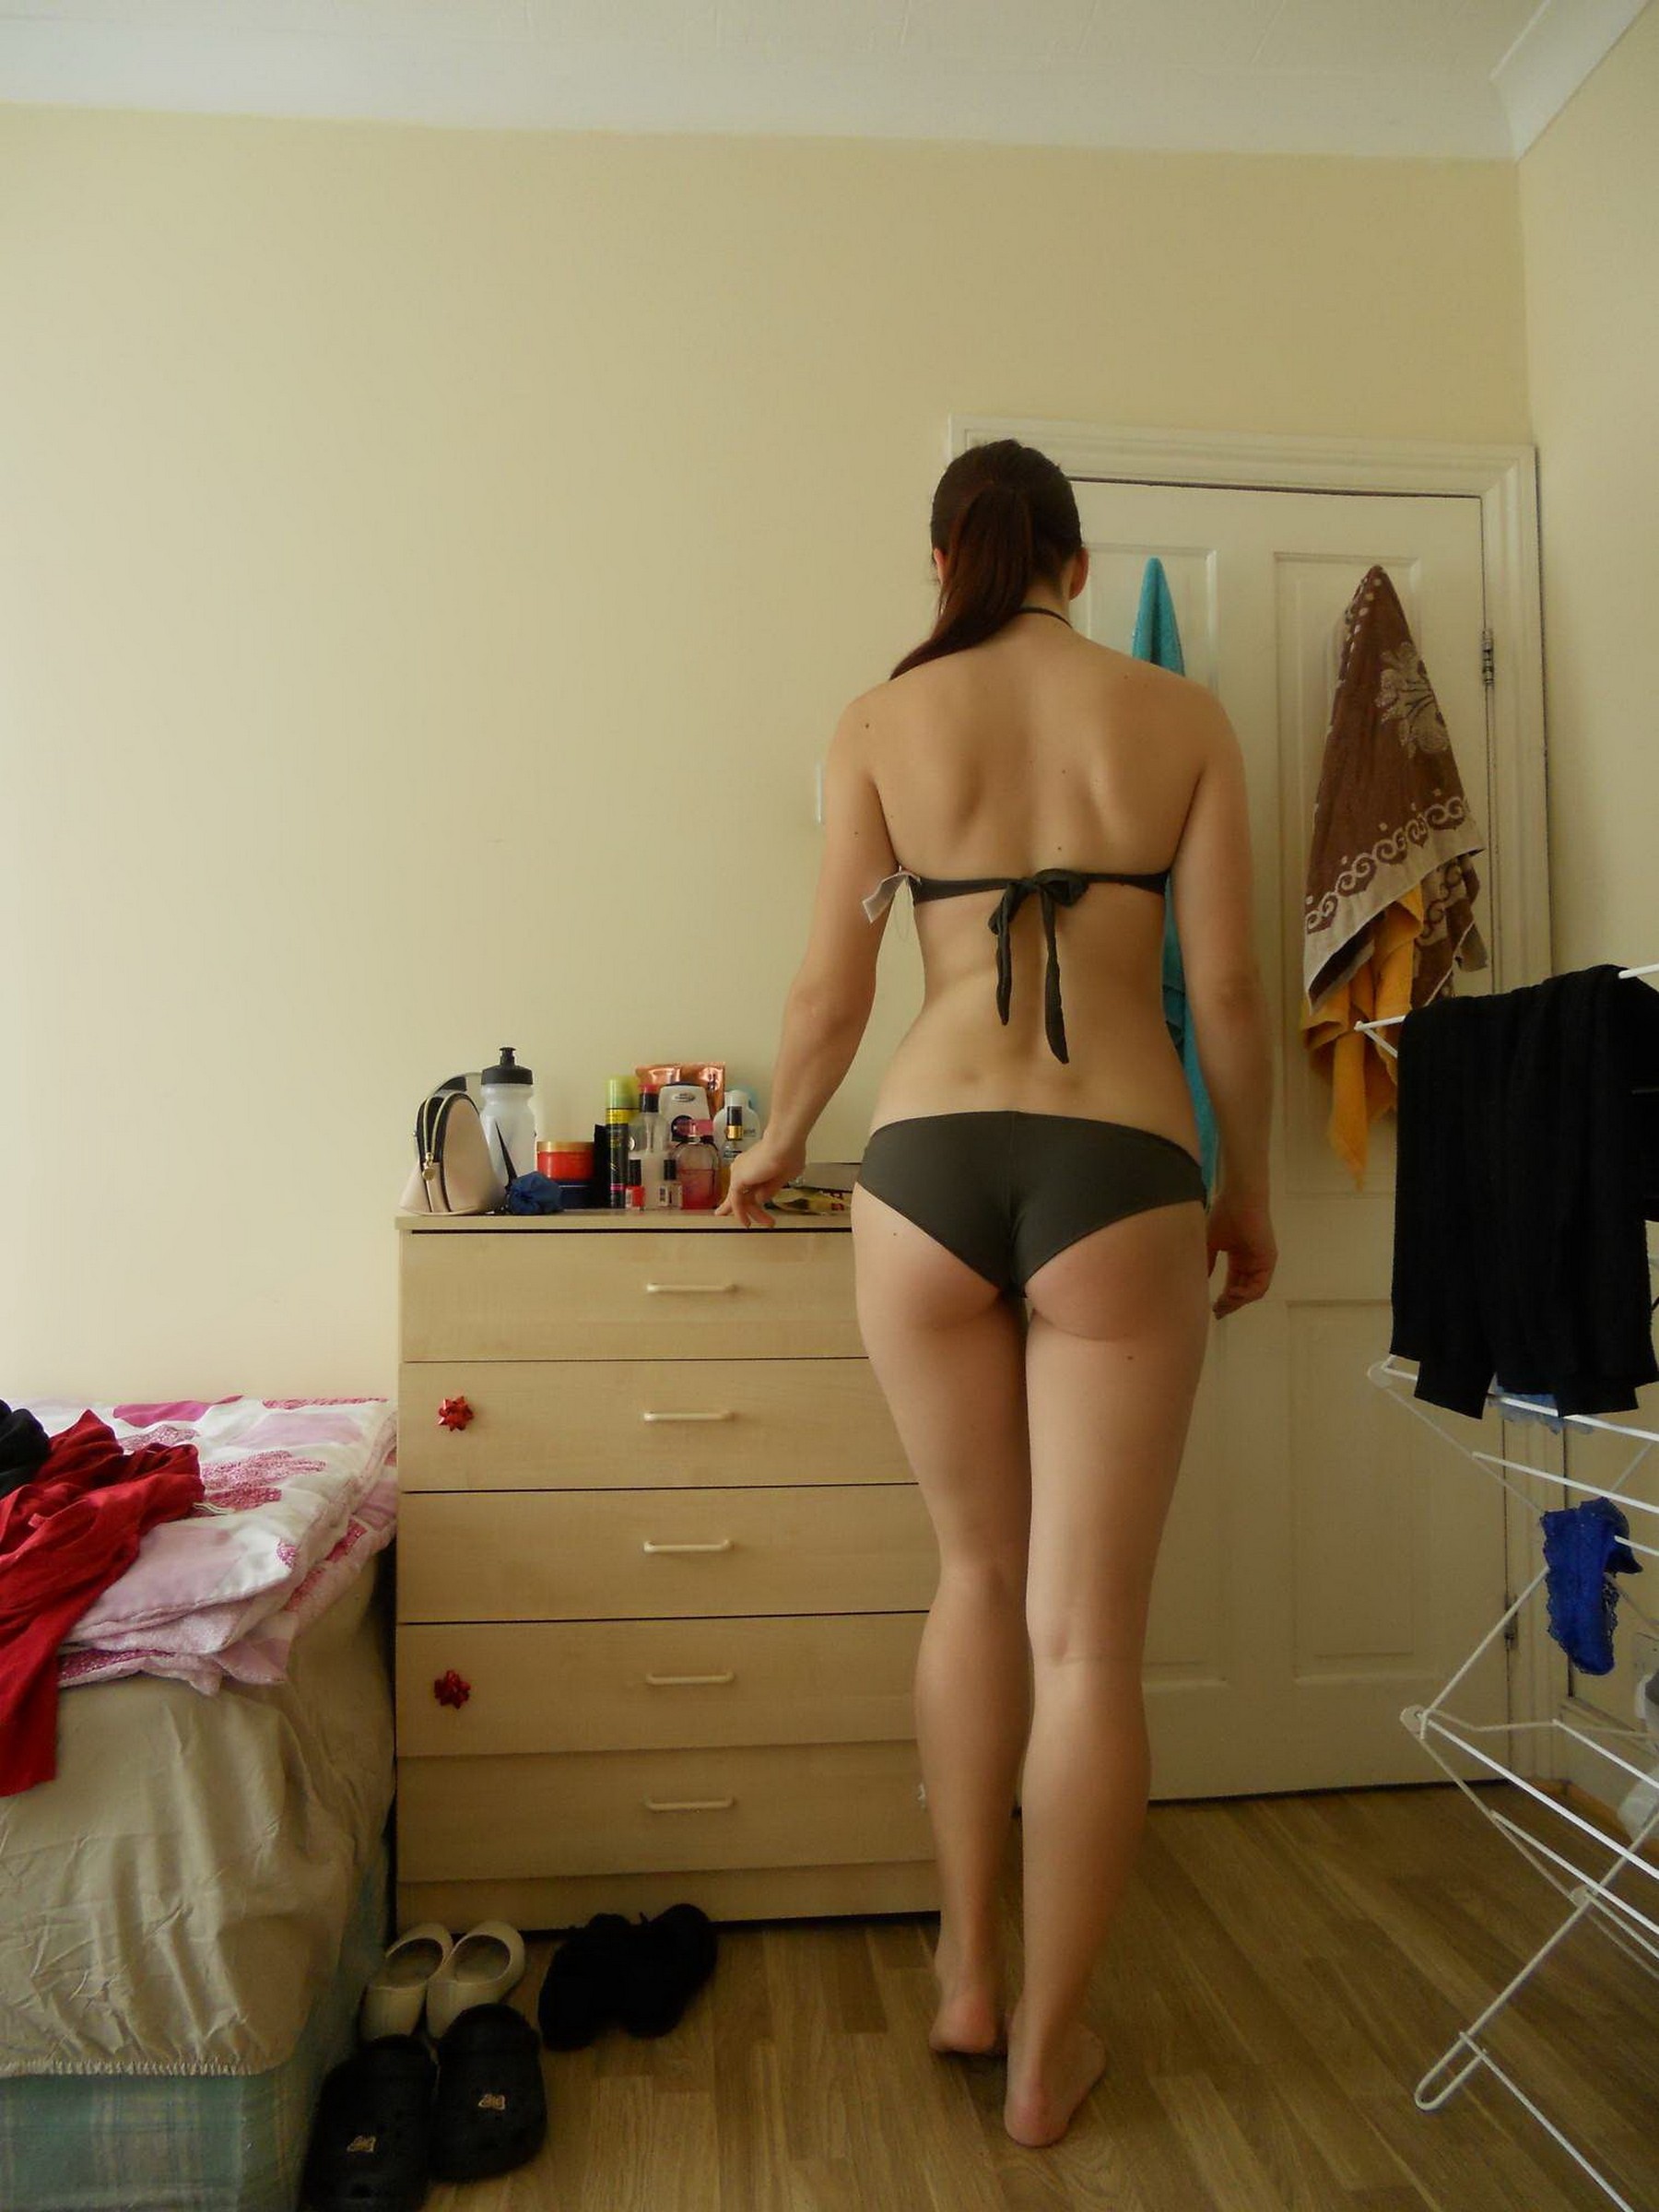 Красивая девушка позирует в нижнем белье у себя в комнате 12 фотография